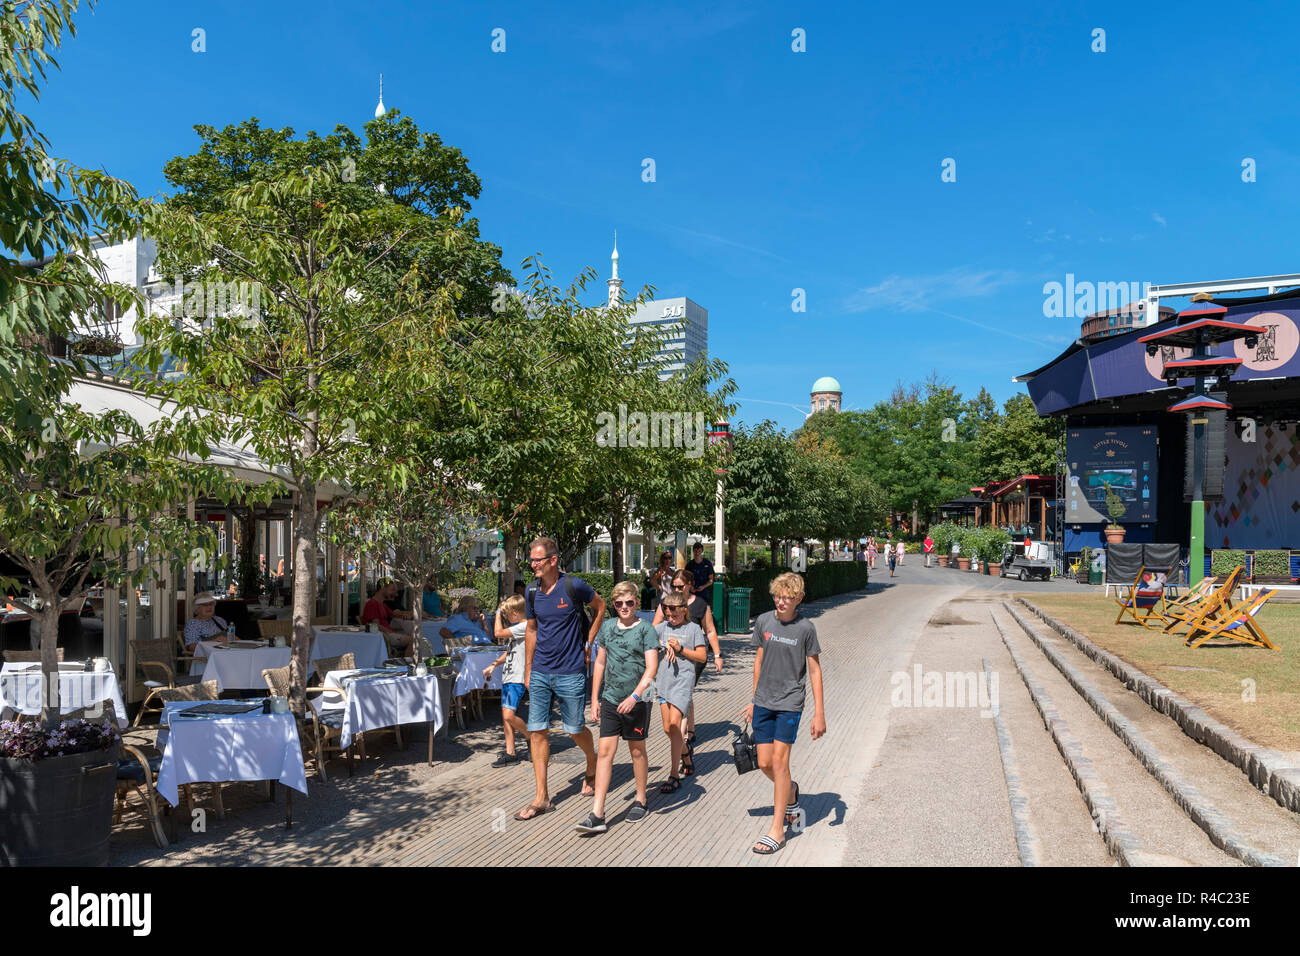 Family walking past a restaurant at Tivoli Gardens, Copenhagen, Zealand, Denmark Stock Photo